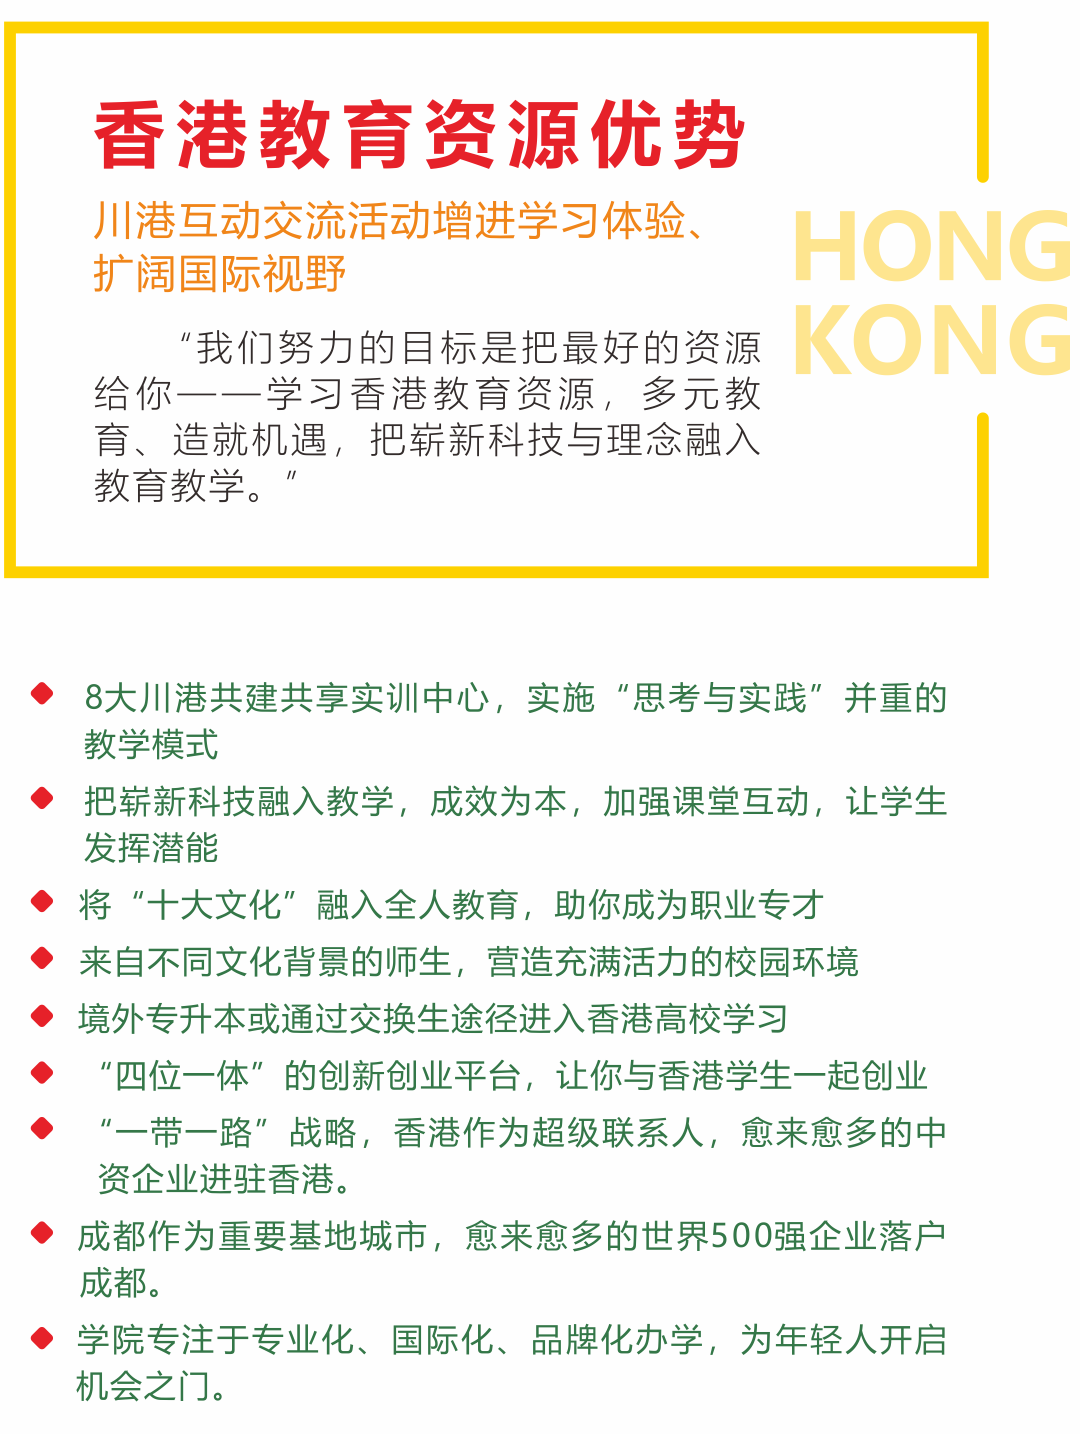 香港教育资源优势